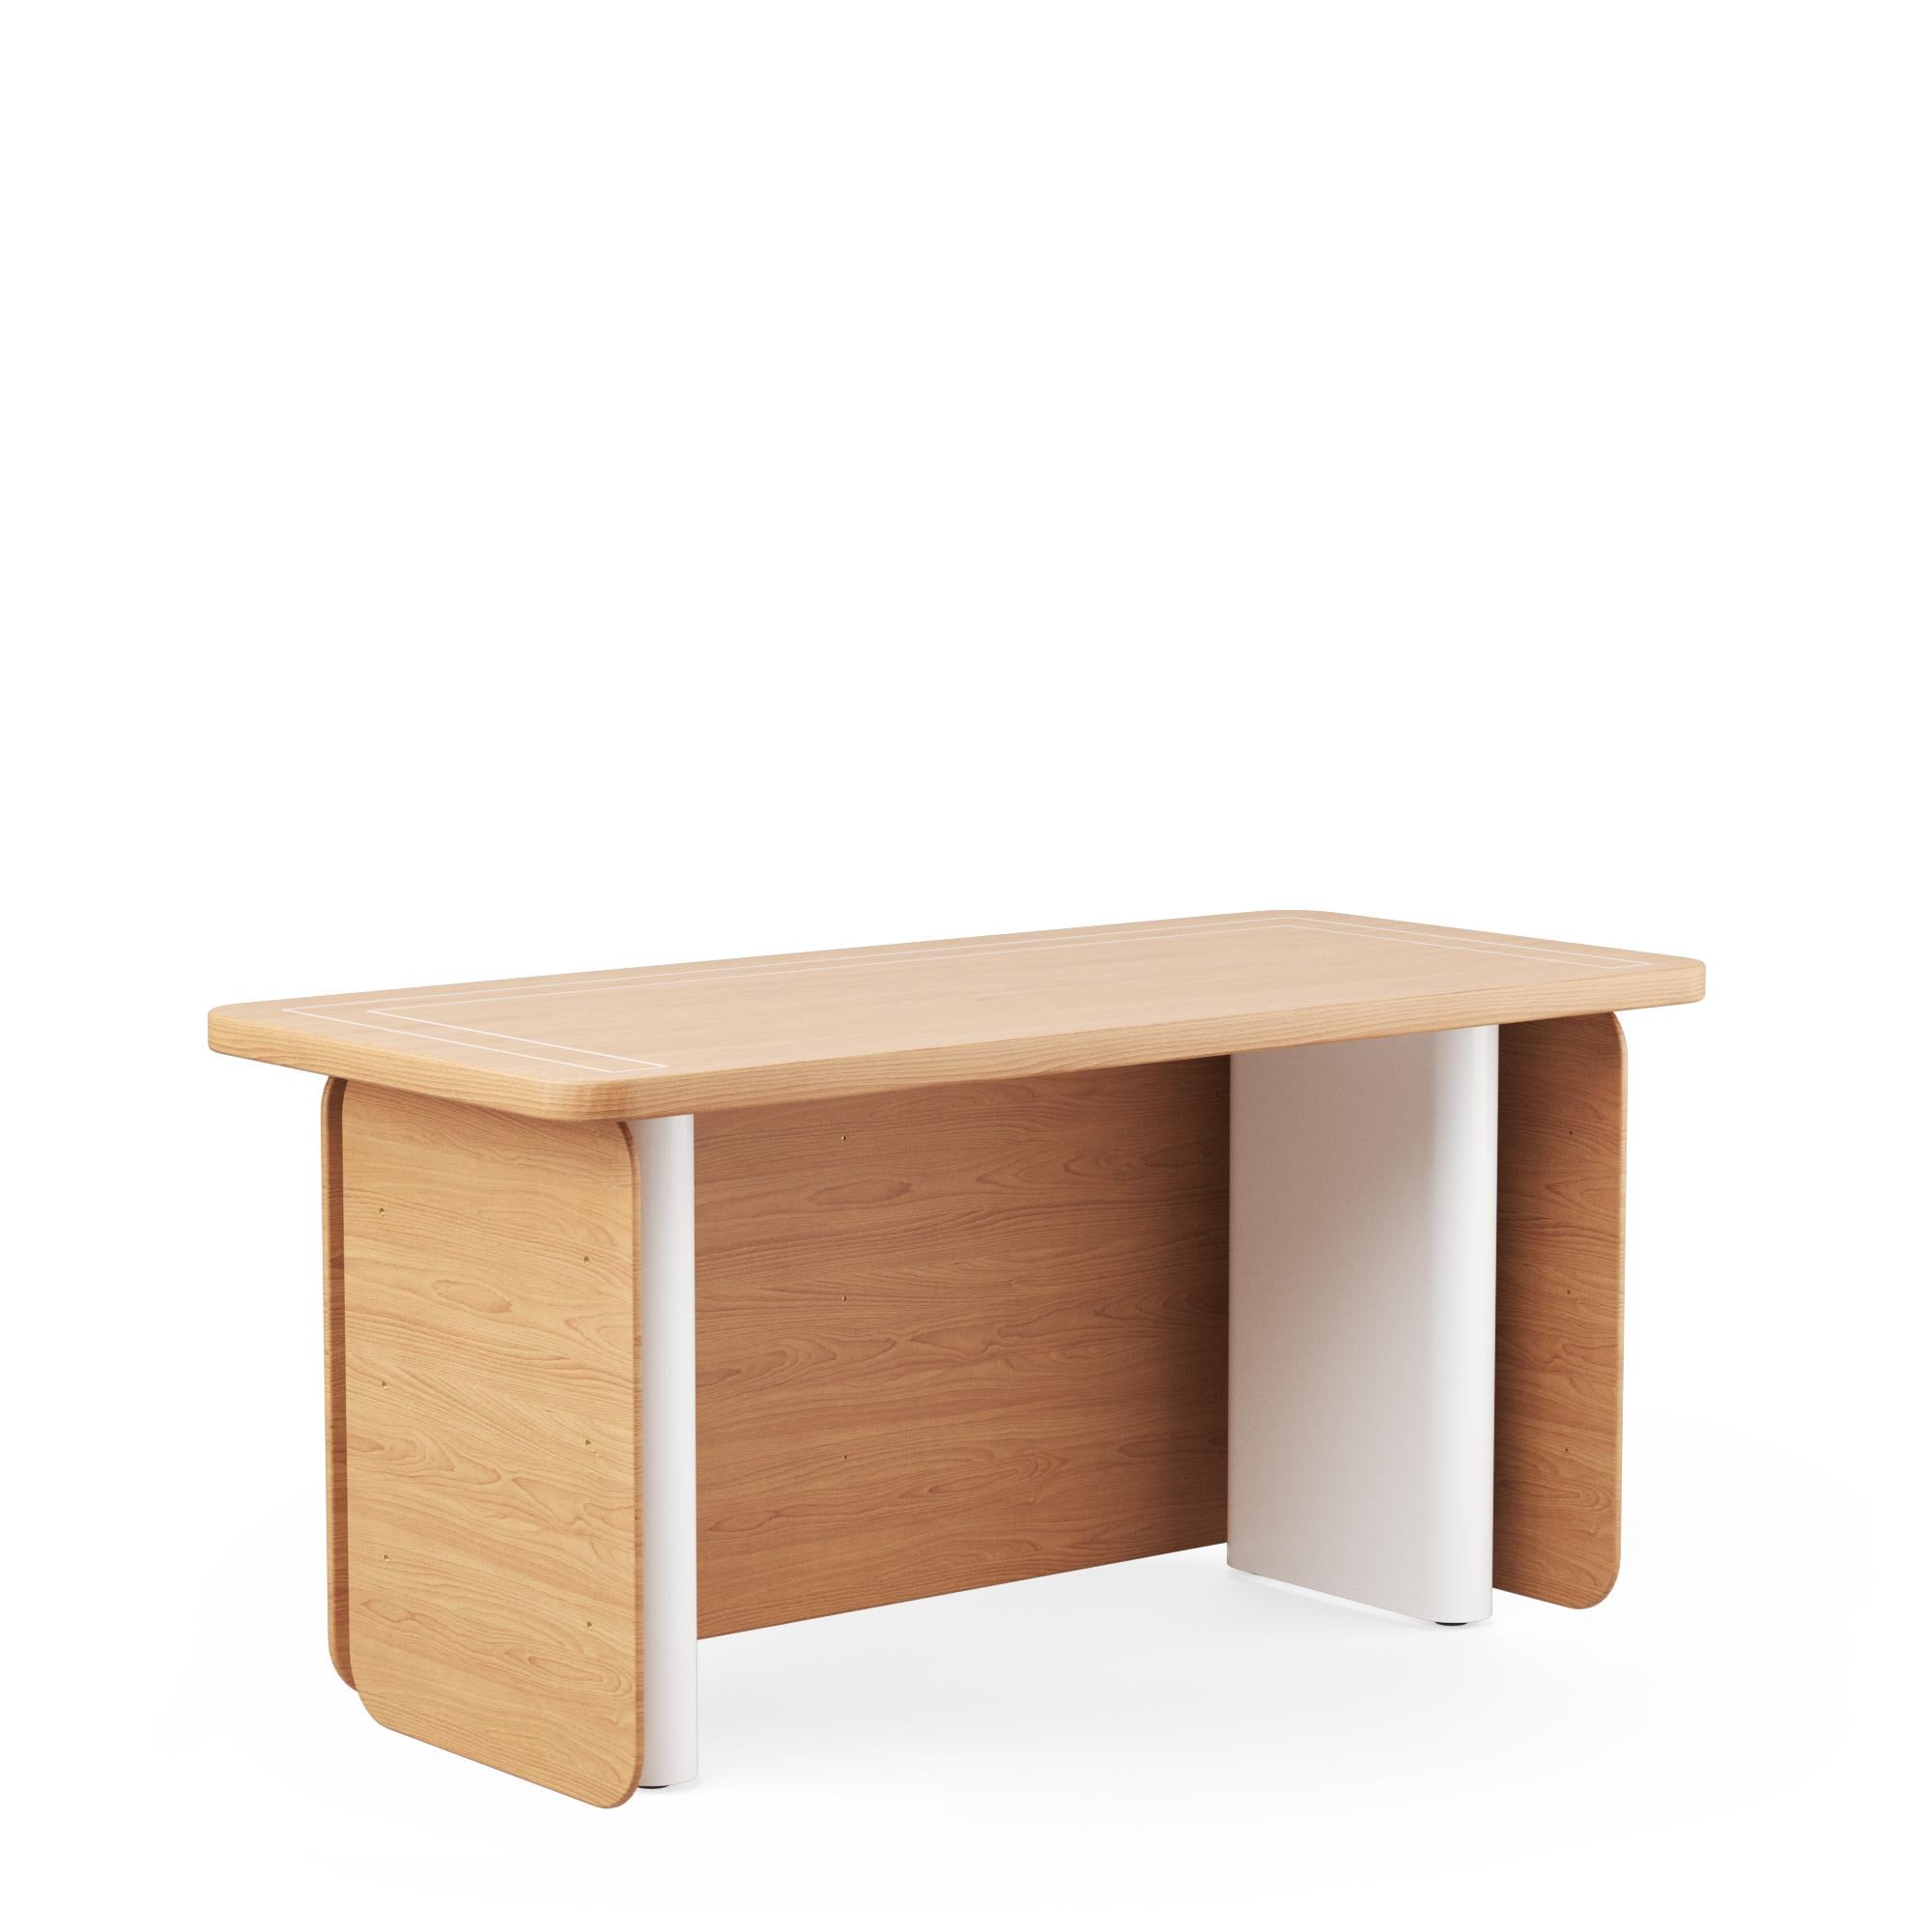 Der HOS-Schreibtisch, der für Home Office System steht, ist der Inbegriff von Anpassungsfähigkeit und modernem Design. Mit seinen drei montierbaren und demontierbaren Holzpaneelen, die jeweils drei abnehmbare Massivholzböden enthalten, passt er sich